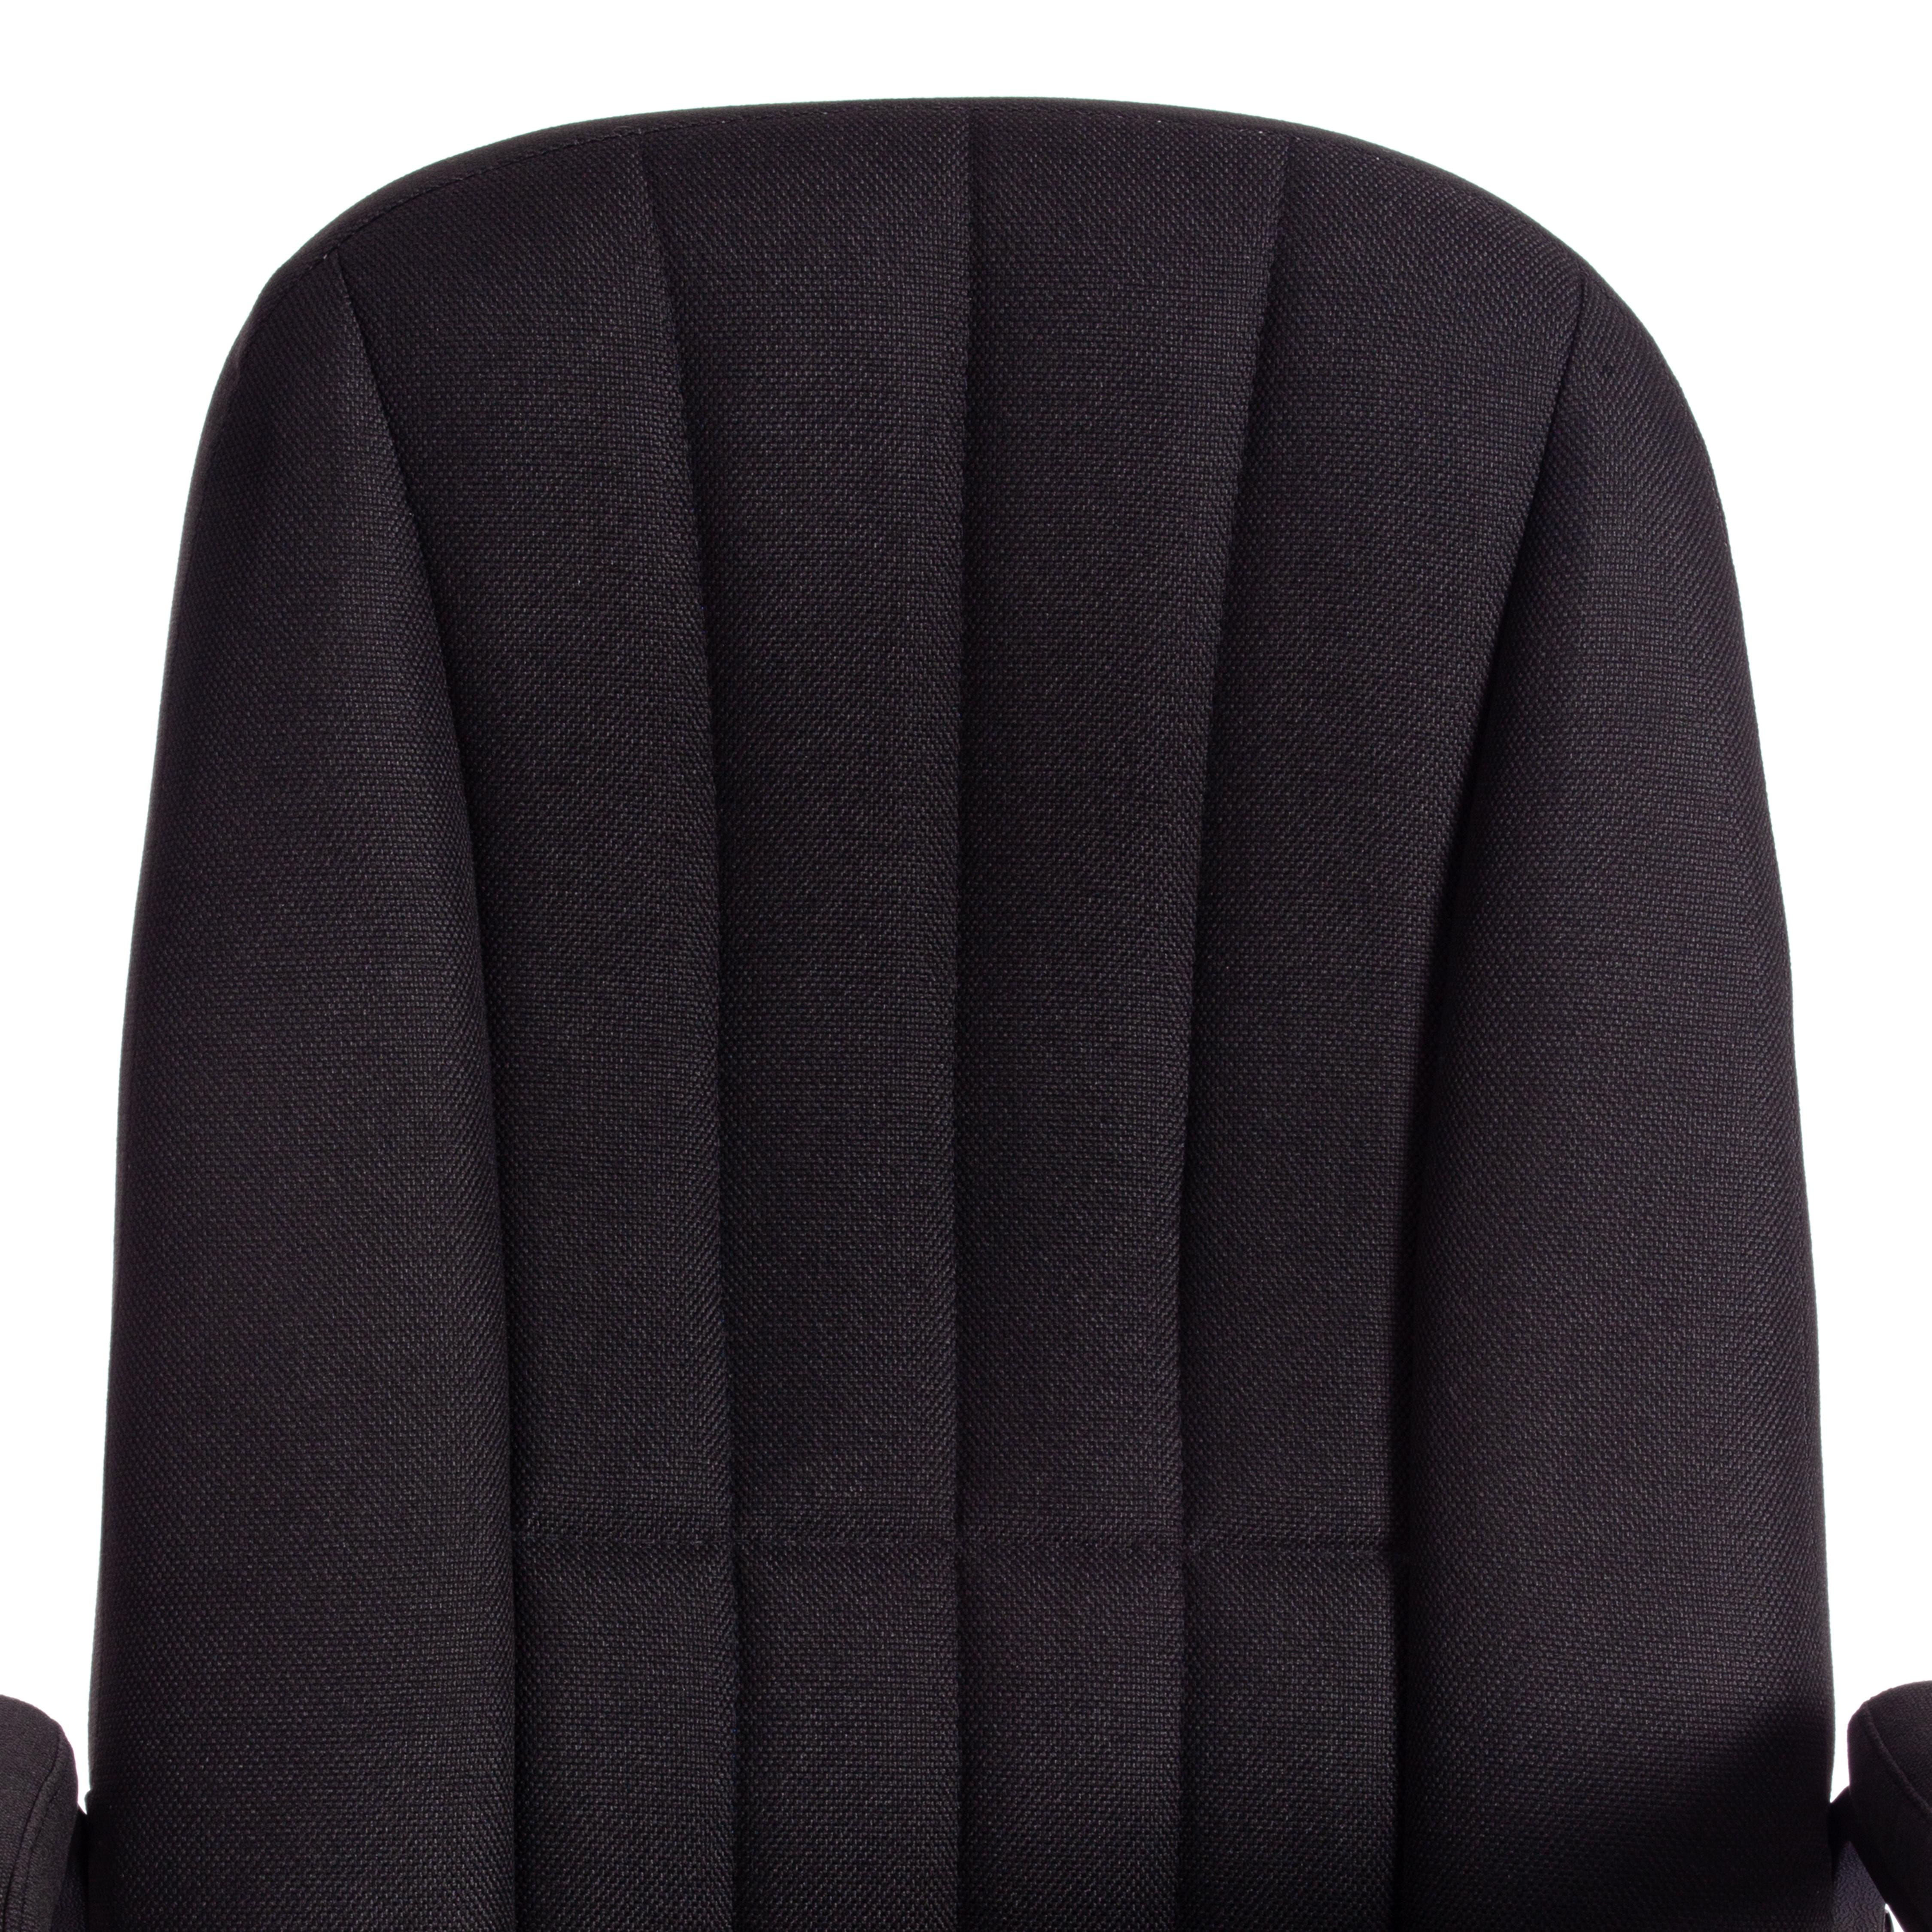 Кресло СН888 (22) ткань, черный, 2603